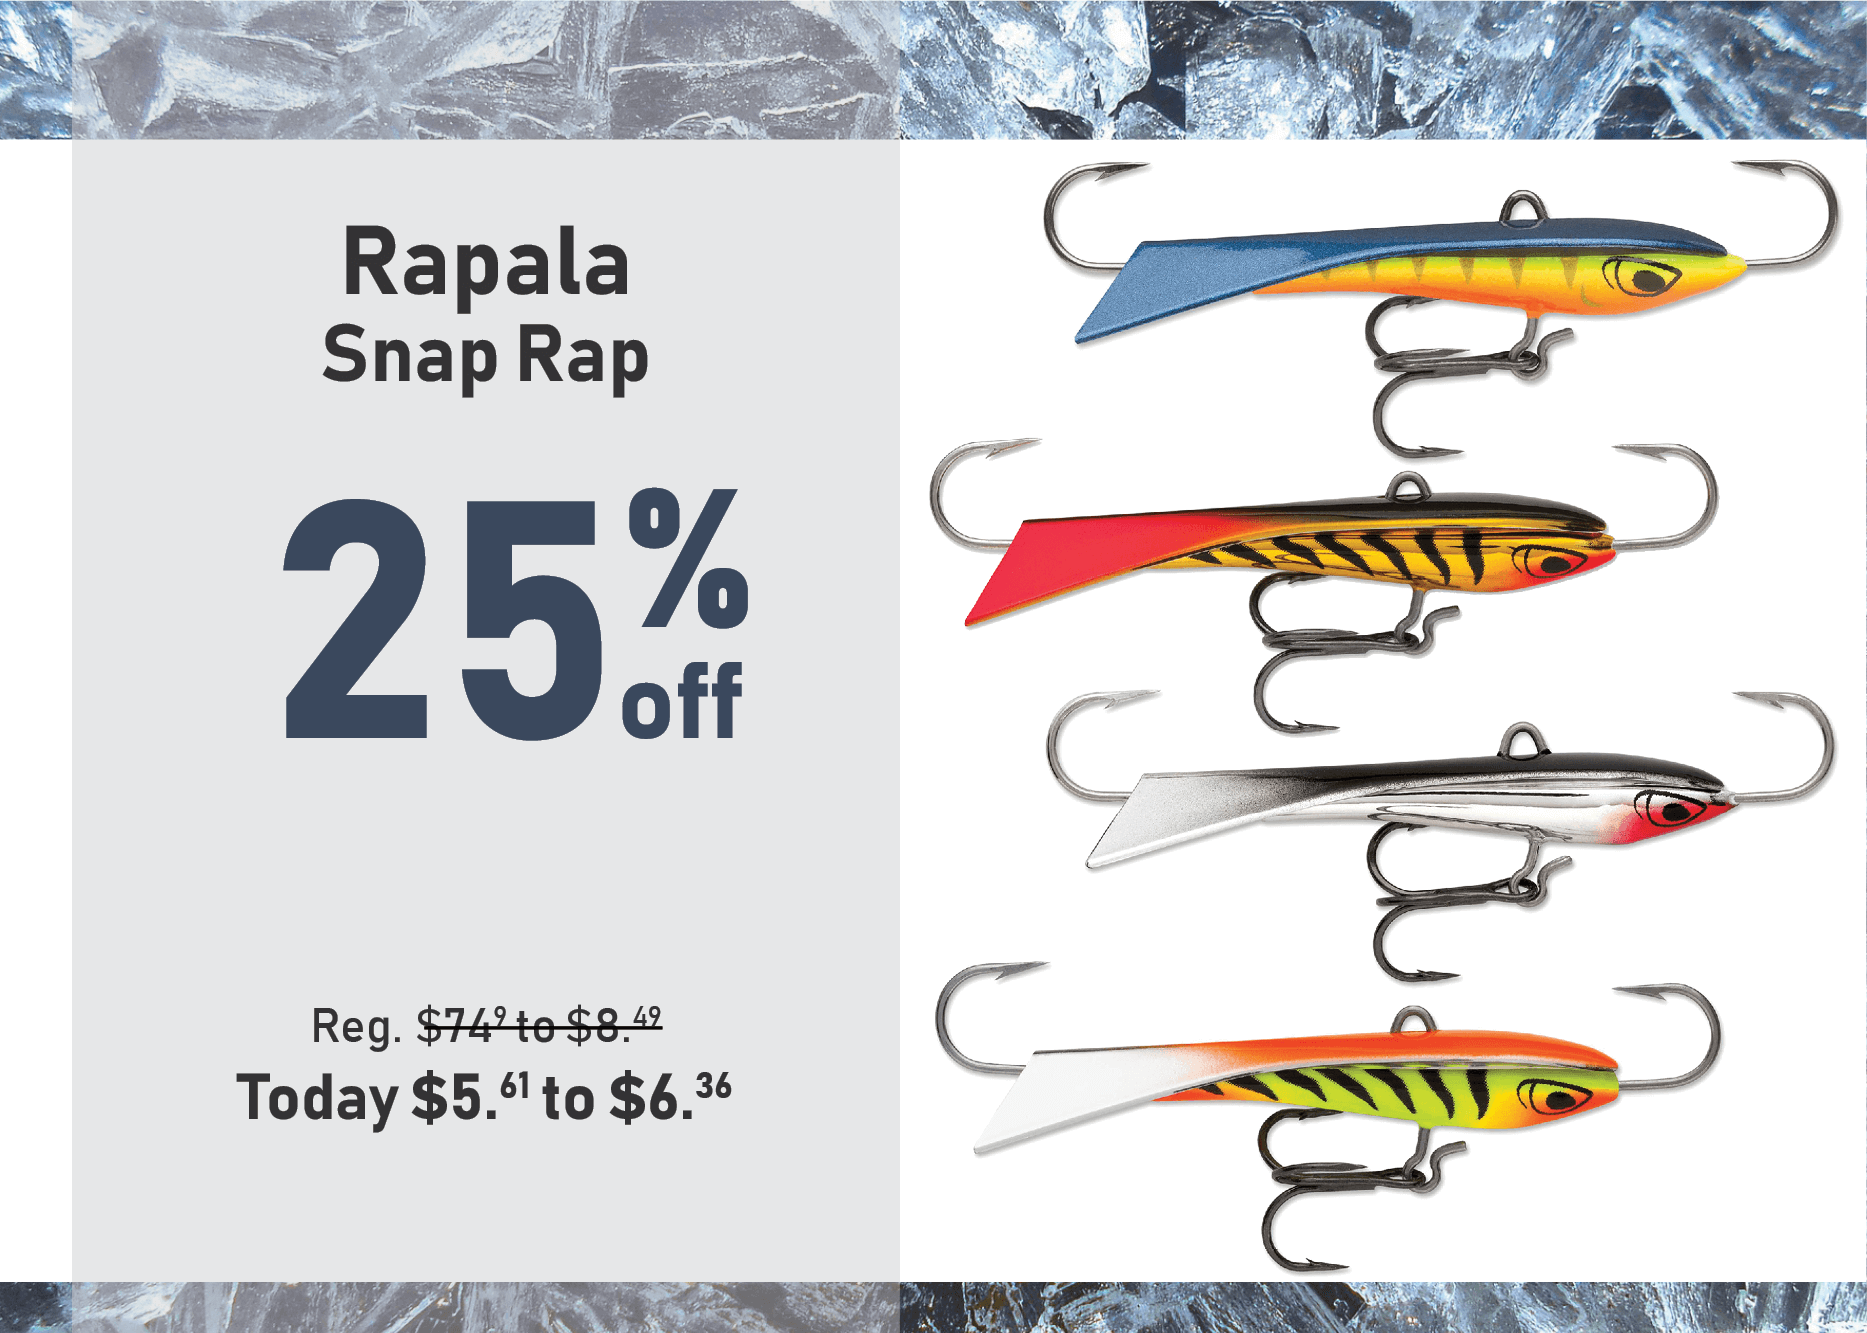 Save 25% on the Rapala Snap Rap